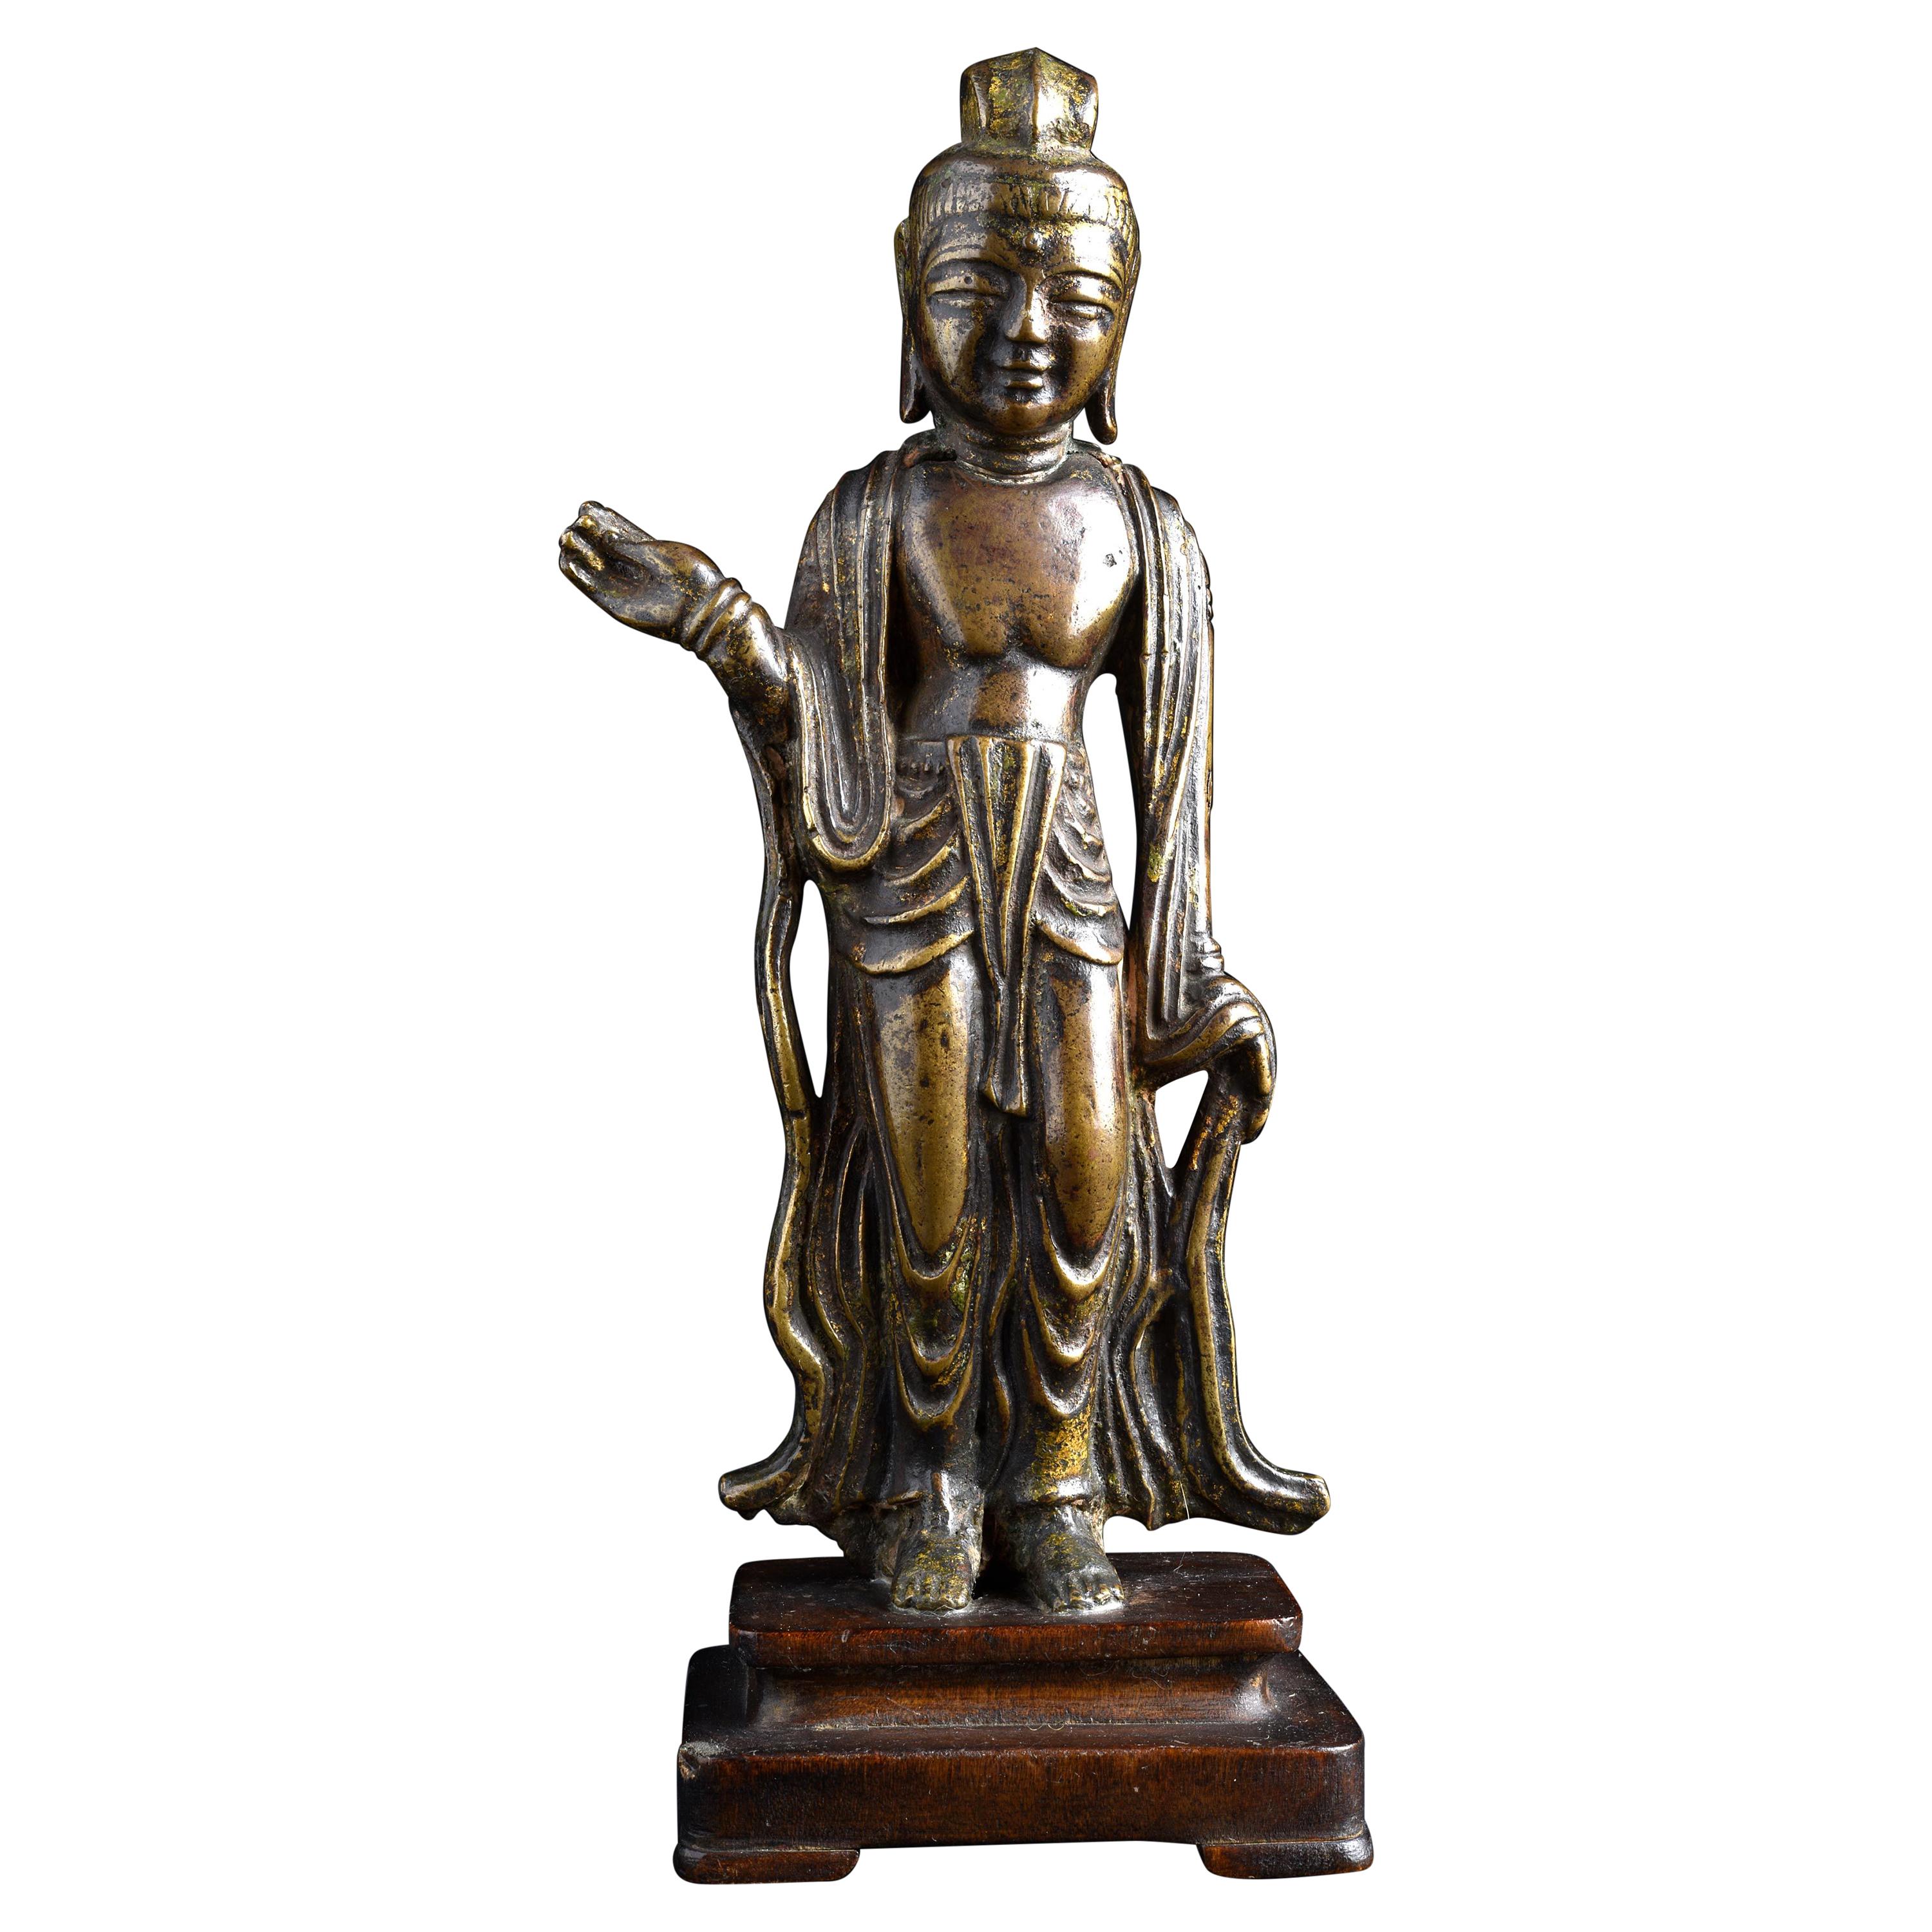 7/8thC Korean Bronze Bodhisattva - 9001 For Sale